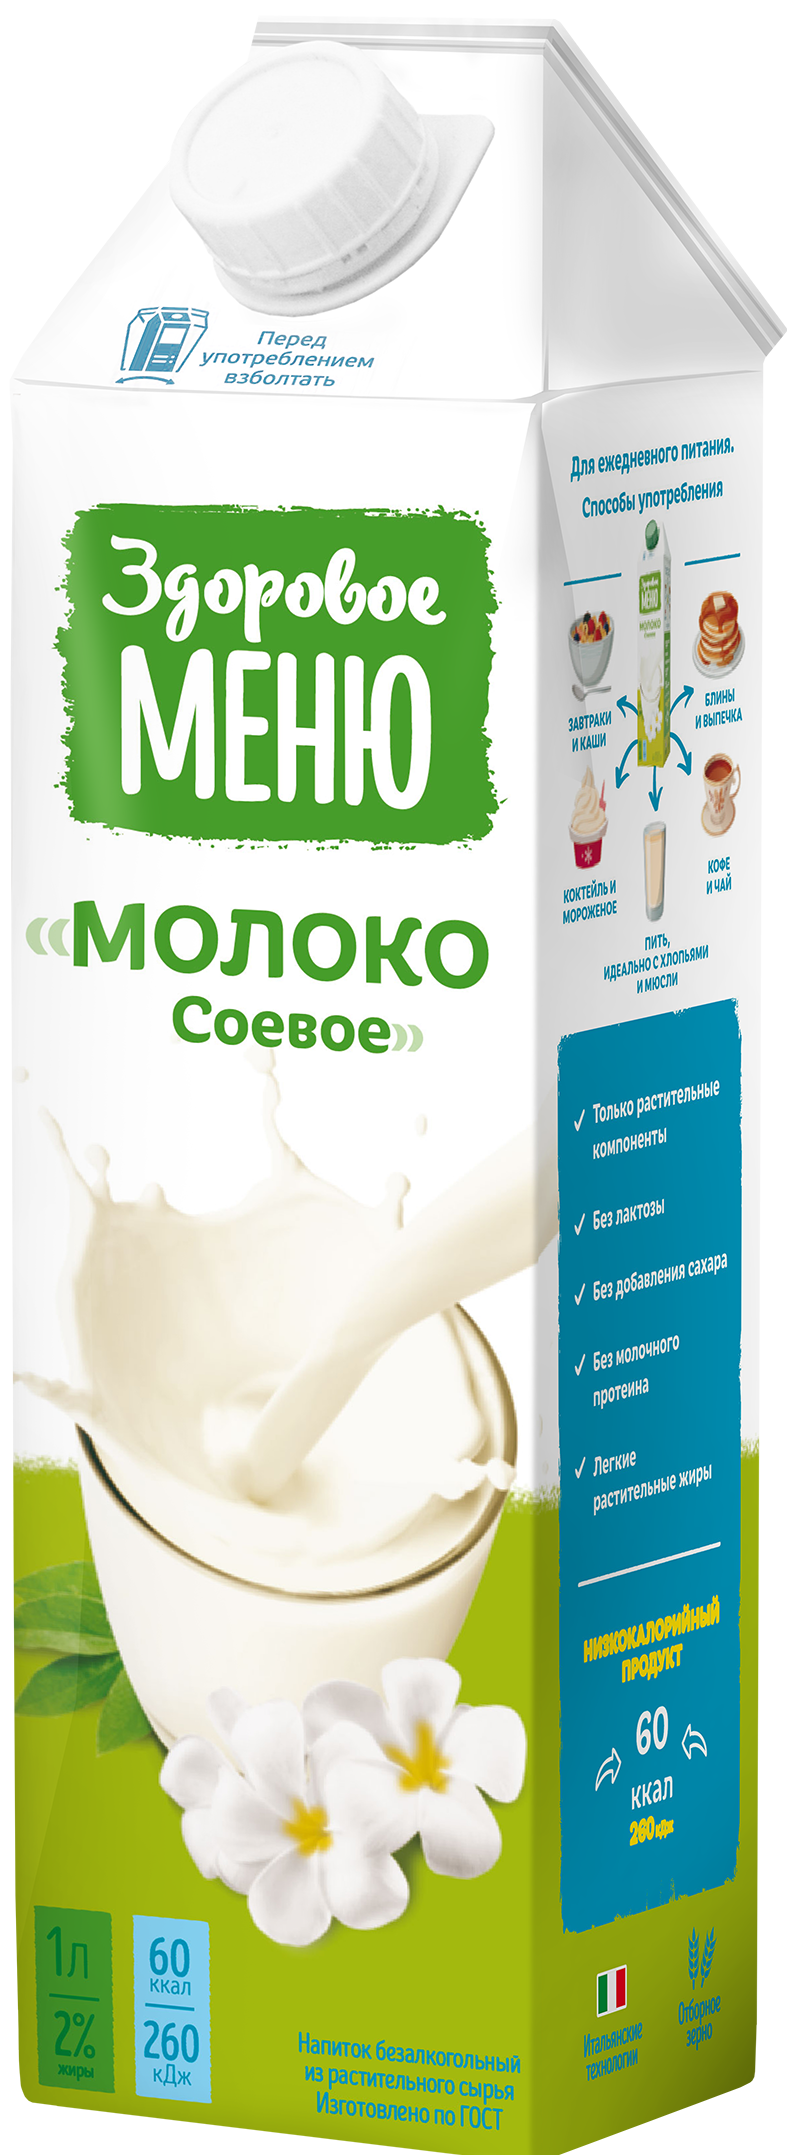 Молоко соевое Здоровое Меню/1л.